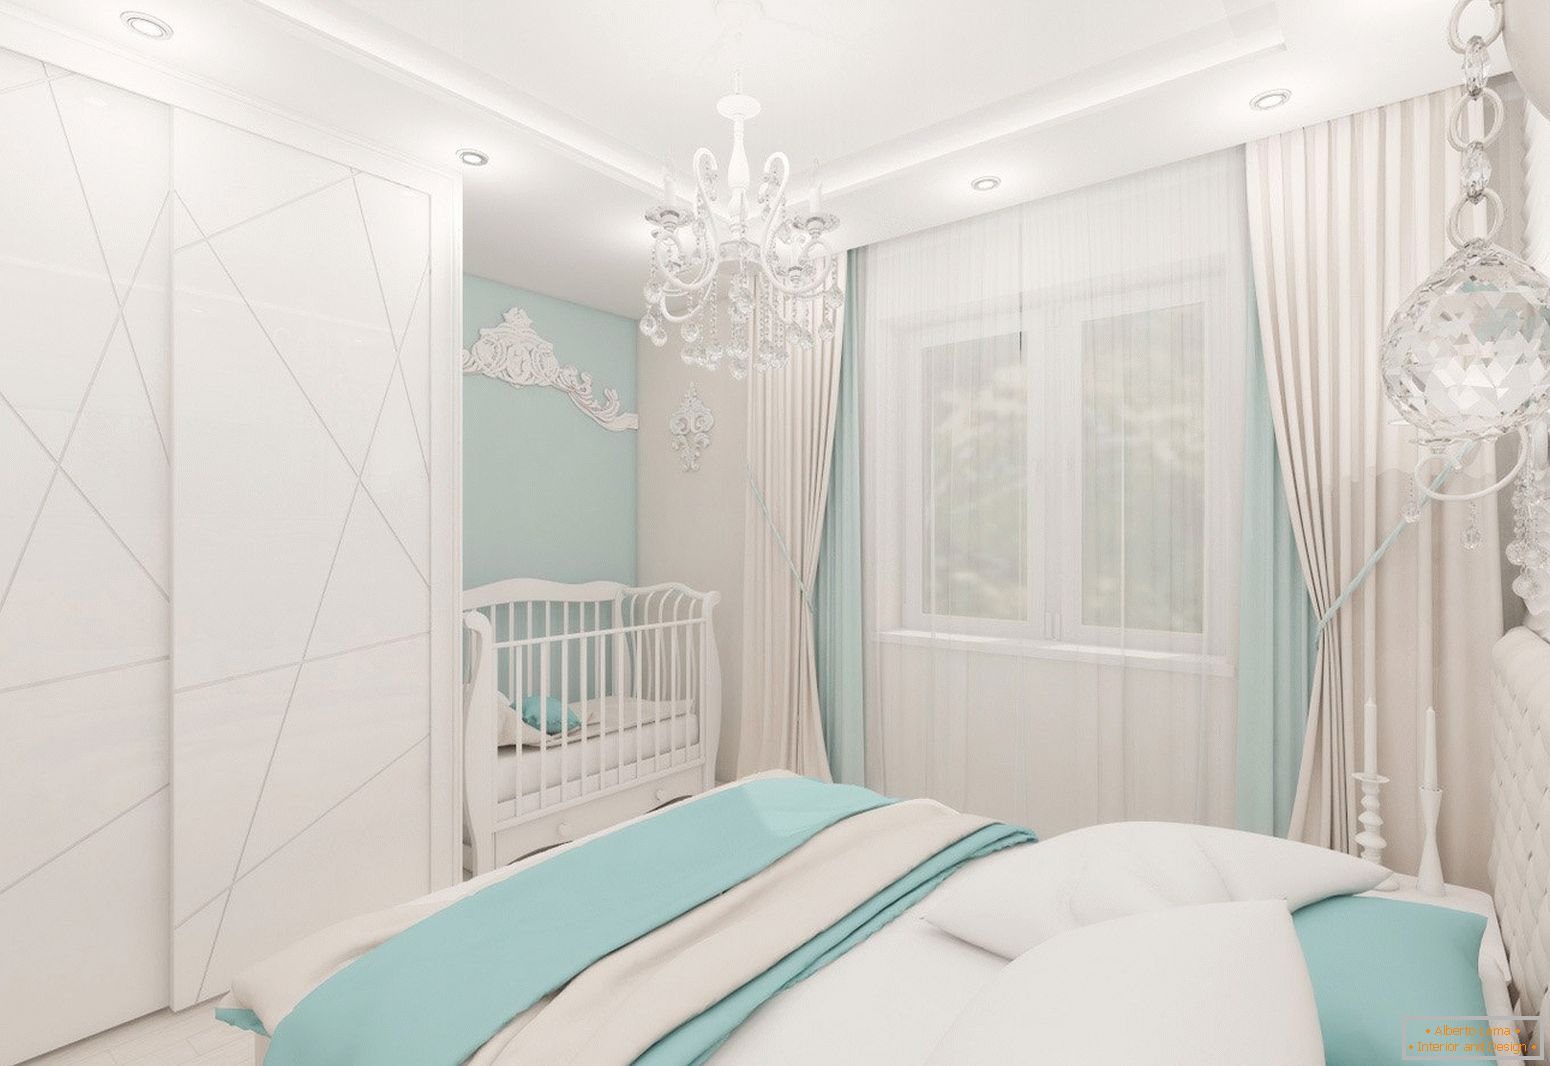 Design de quarto em cores claras